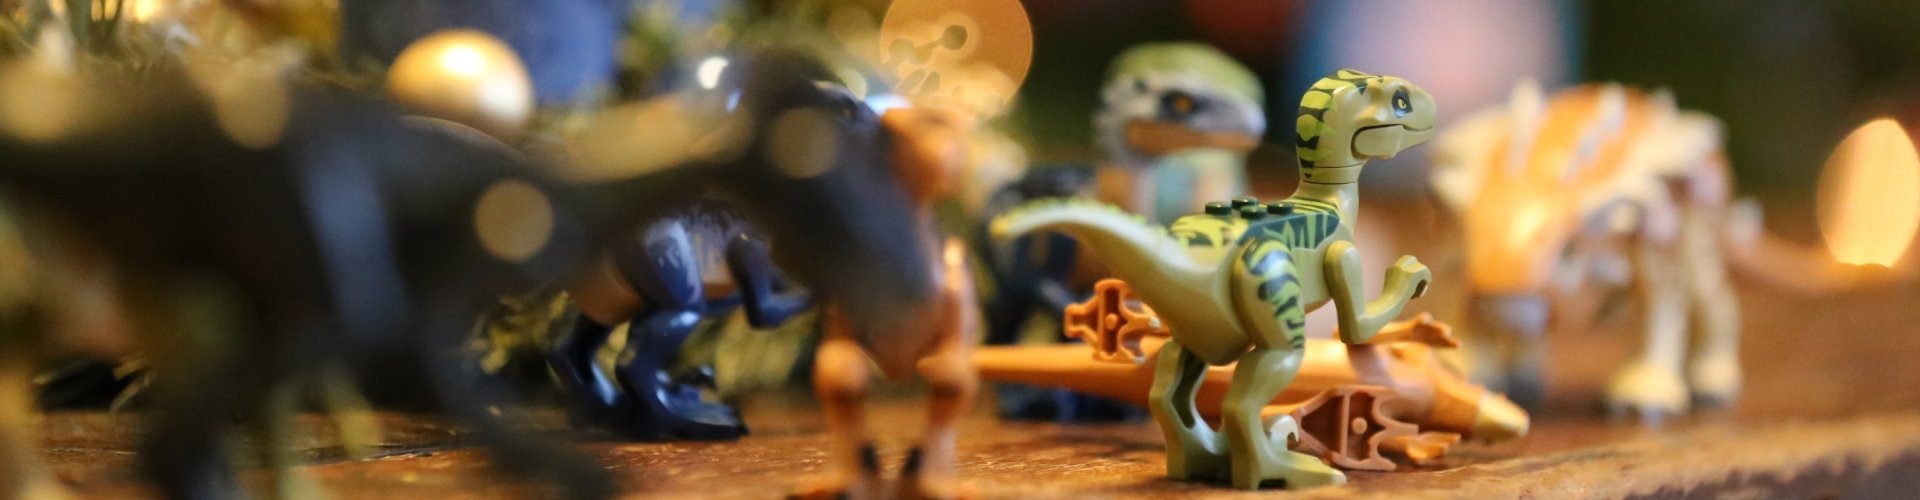 игрушечные динозавры